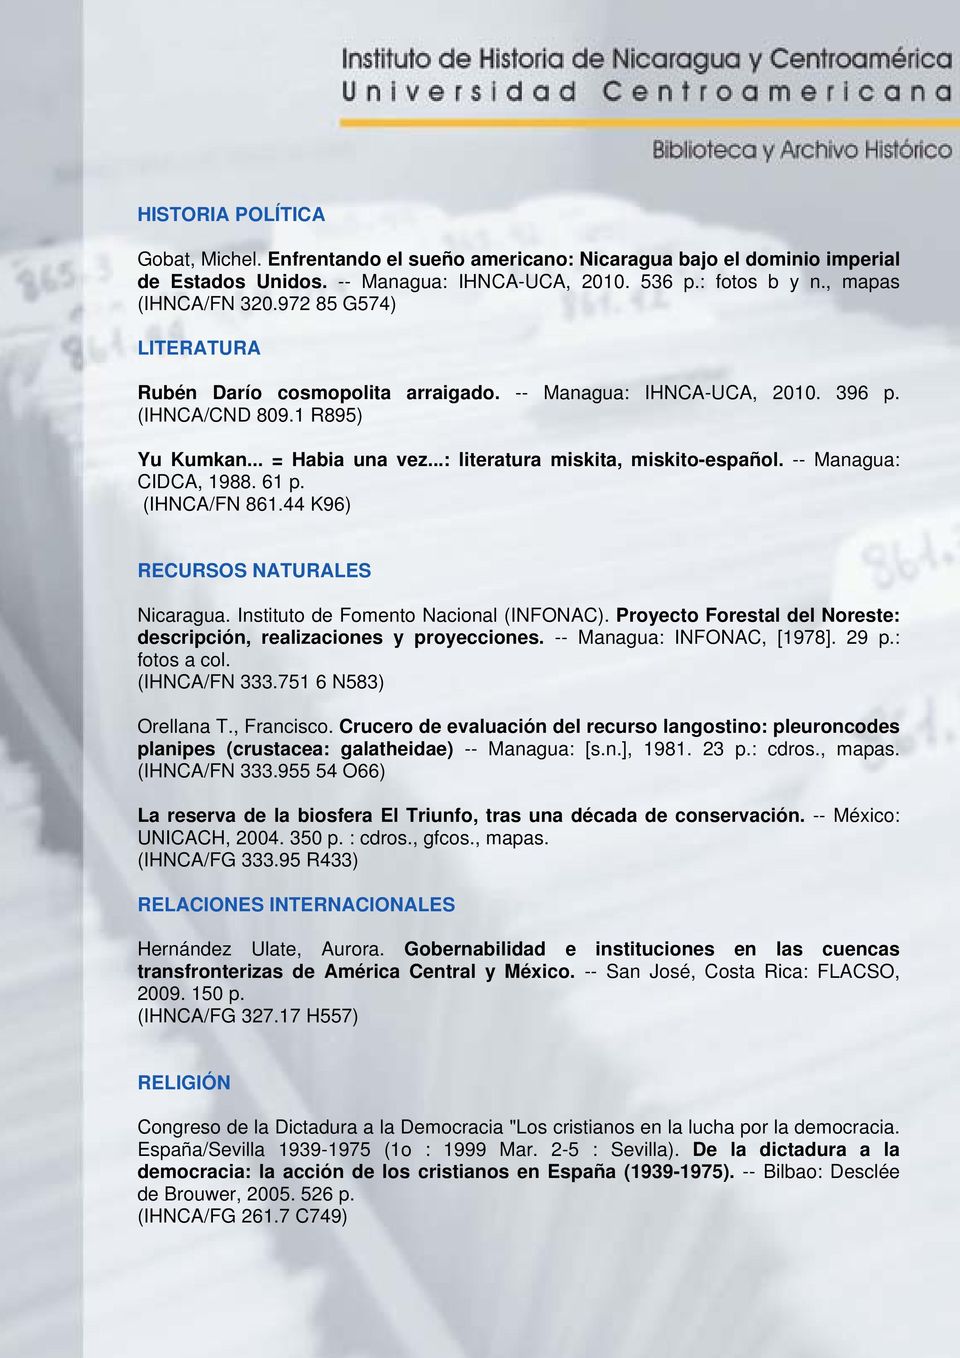 -- Managua: CIDCA, 1988. 61 p. (IHNCA/FN 861.44 K96) RECURSOS NATURALES Nicaragua. Instituto de Fomento Nacional (INFONAC). Proyecto Forestal del Noreste: descripción, realizaciones y proyecciones.